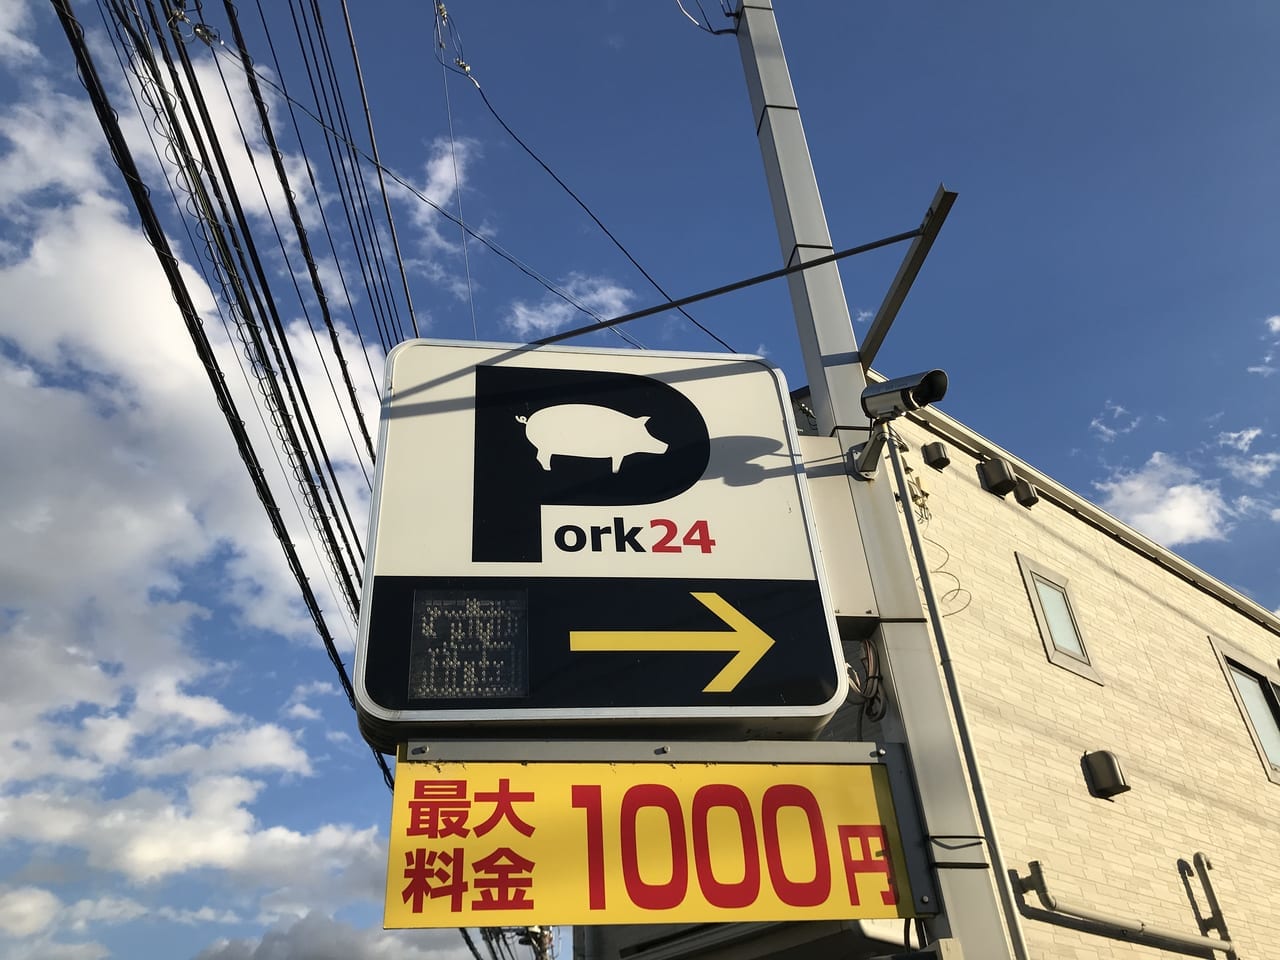 世田谷区中町のおもしろネーミングのパーキング「Pork24」